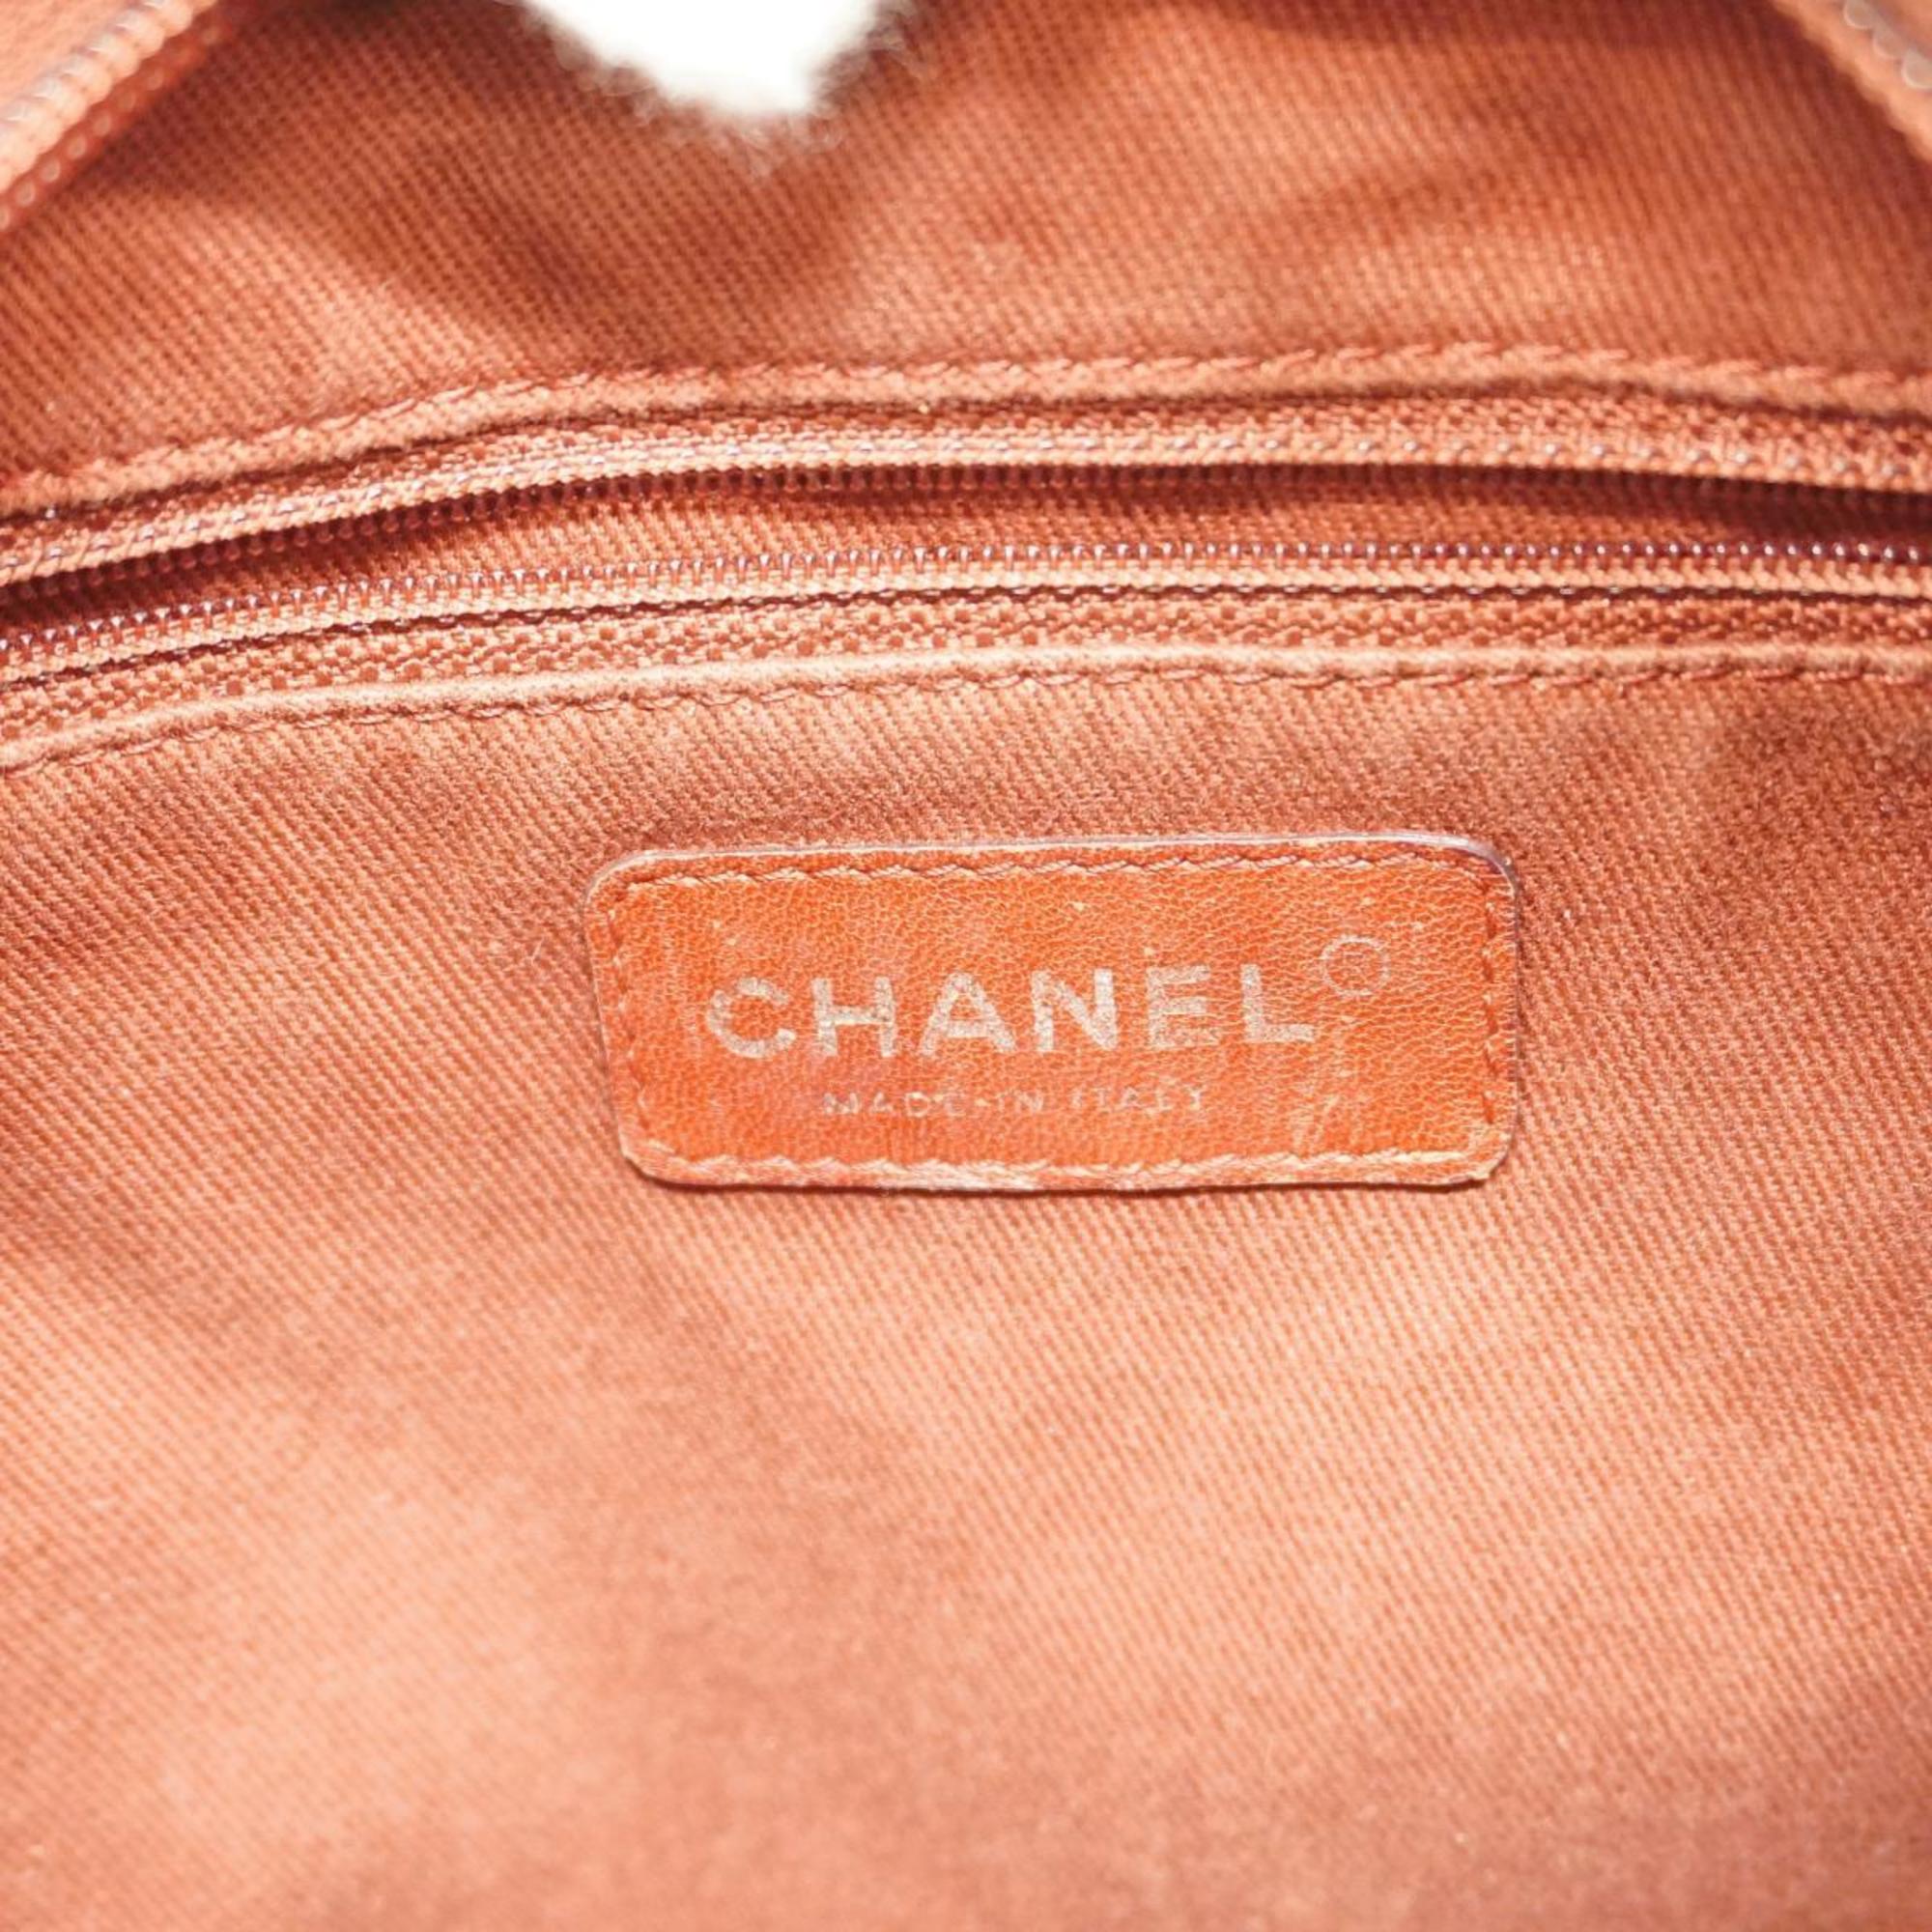 シャネル(Chanel) シャネル ショルダーバッグ マトラッセ チェーンショルダー ラムスキン アイボリー   レディース